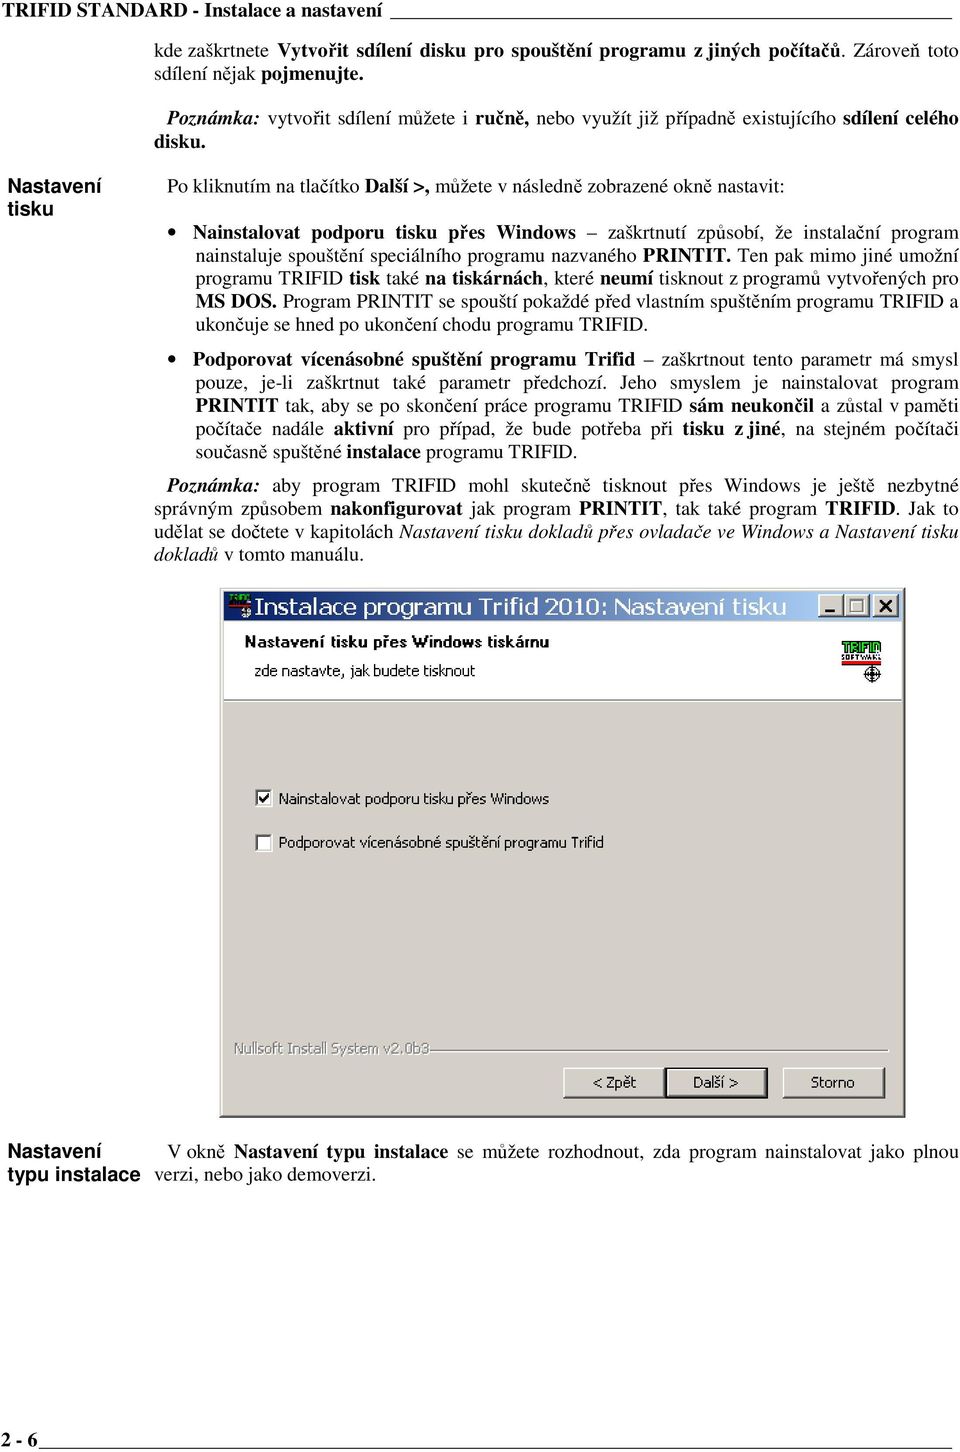 Nastavení tisku Po kliknutím na tlačítko Další >, můžete v následně zobrazené okně nastavit: Nainstalovat podporu tisku přes Windows zaškrtnutí způsobí, že instalační program nainstaluje spouštění